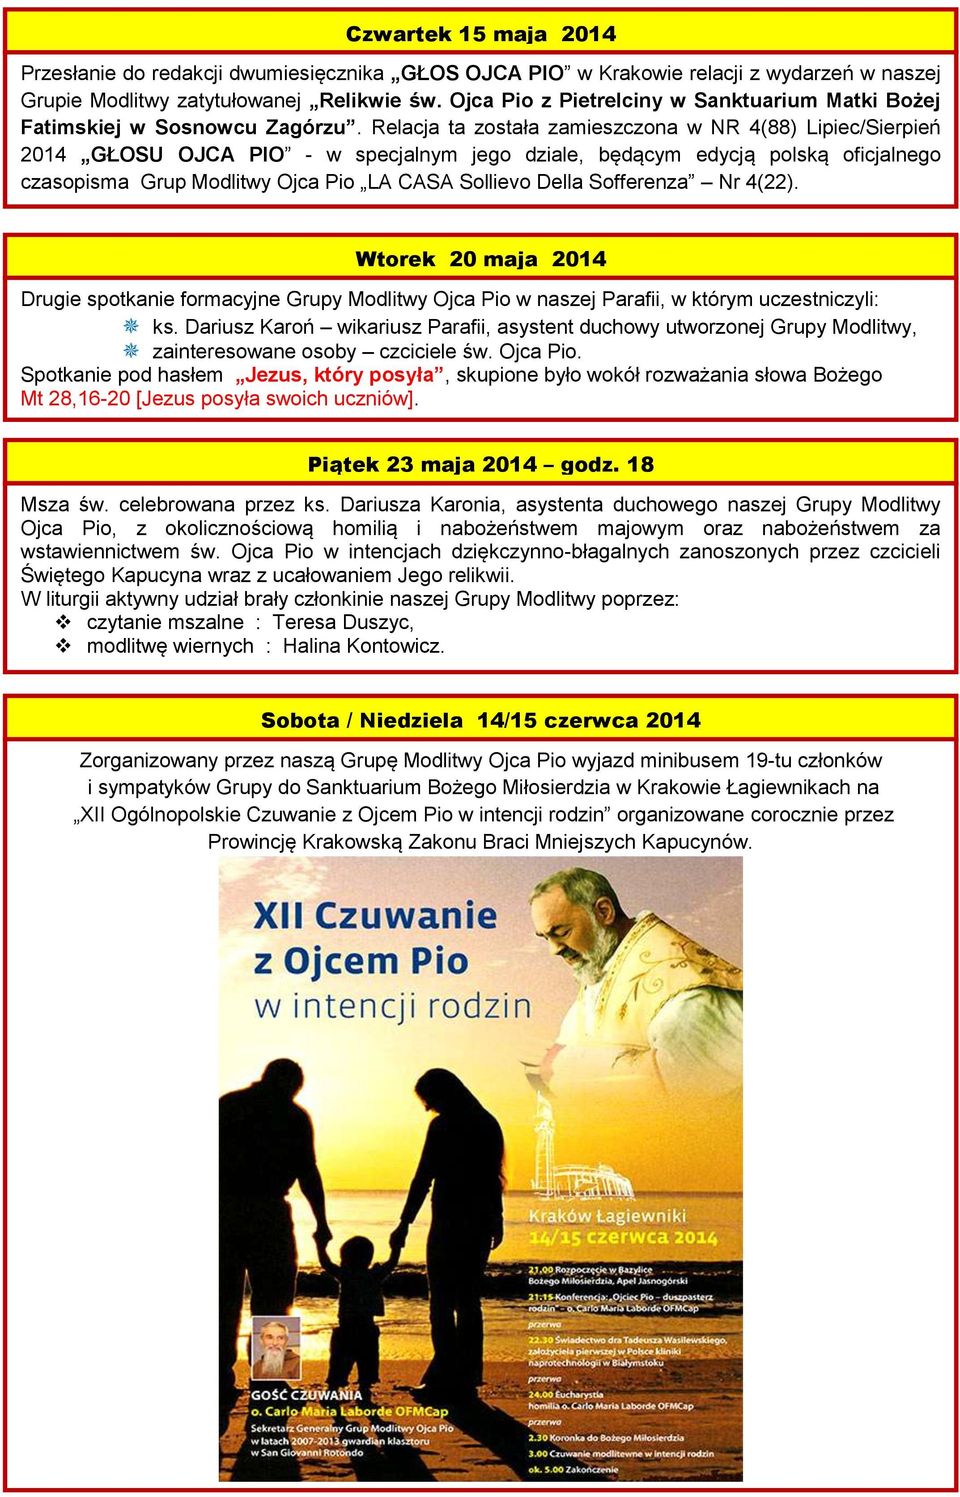 Relacja ta została zamieszczona w NR 4(88) Lipiec/Sierpień 2014 GŁOSU OJCA PIO - w specjalnym jego dziale, będącym edycją polską oficjalnego czasopisma Grup Modlitwy Ojca Pio LA CASA Sollievo Della